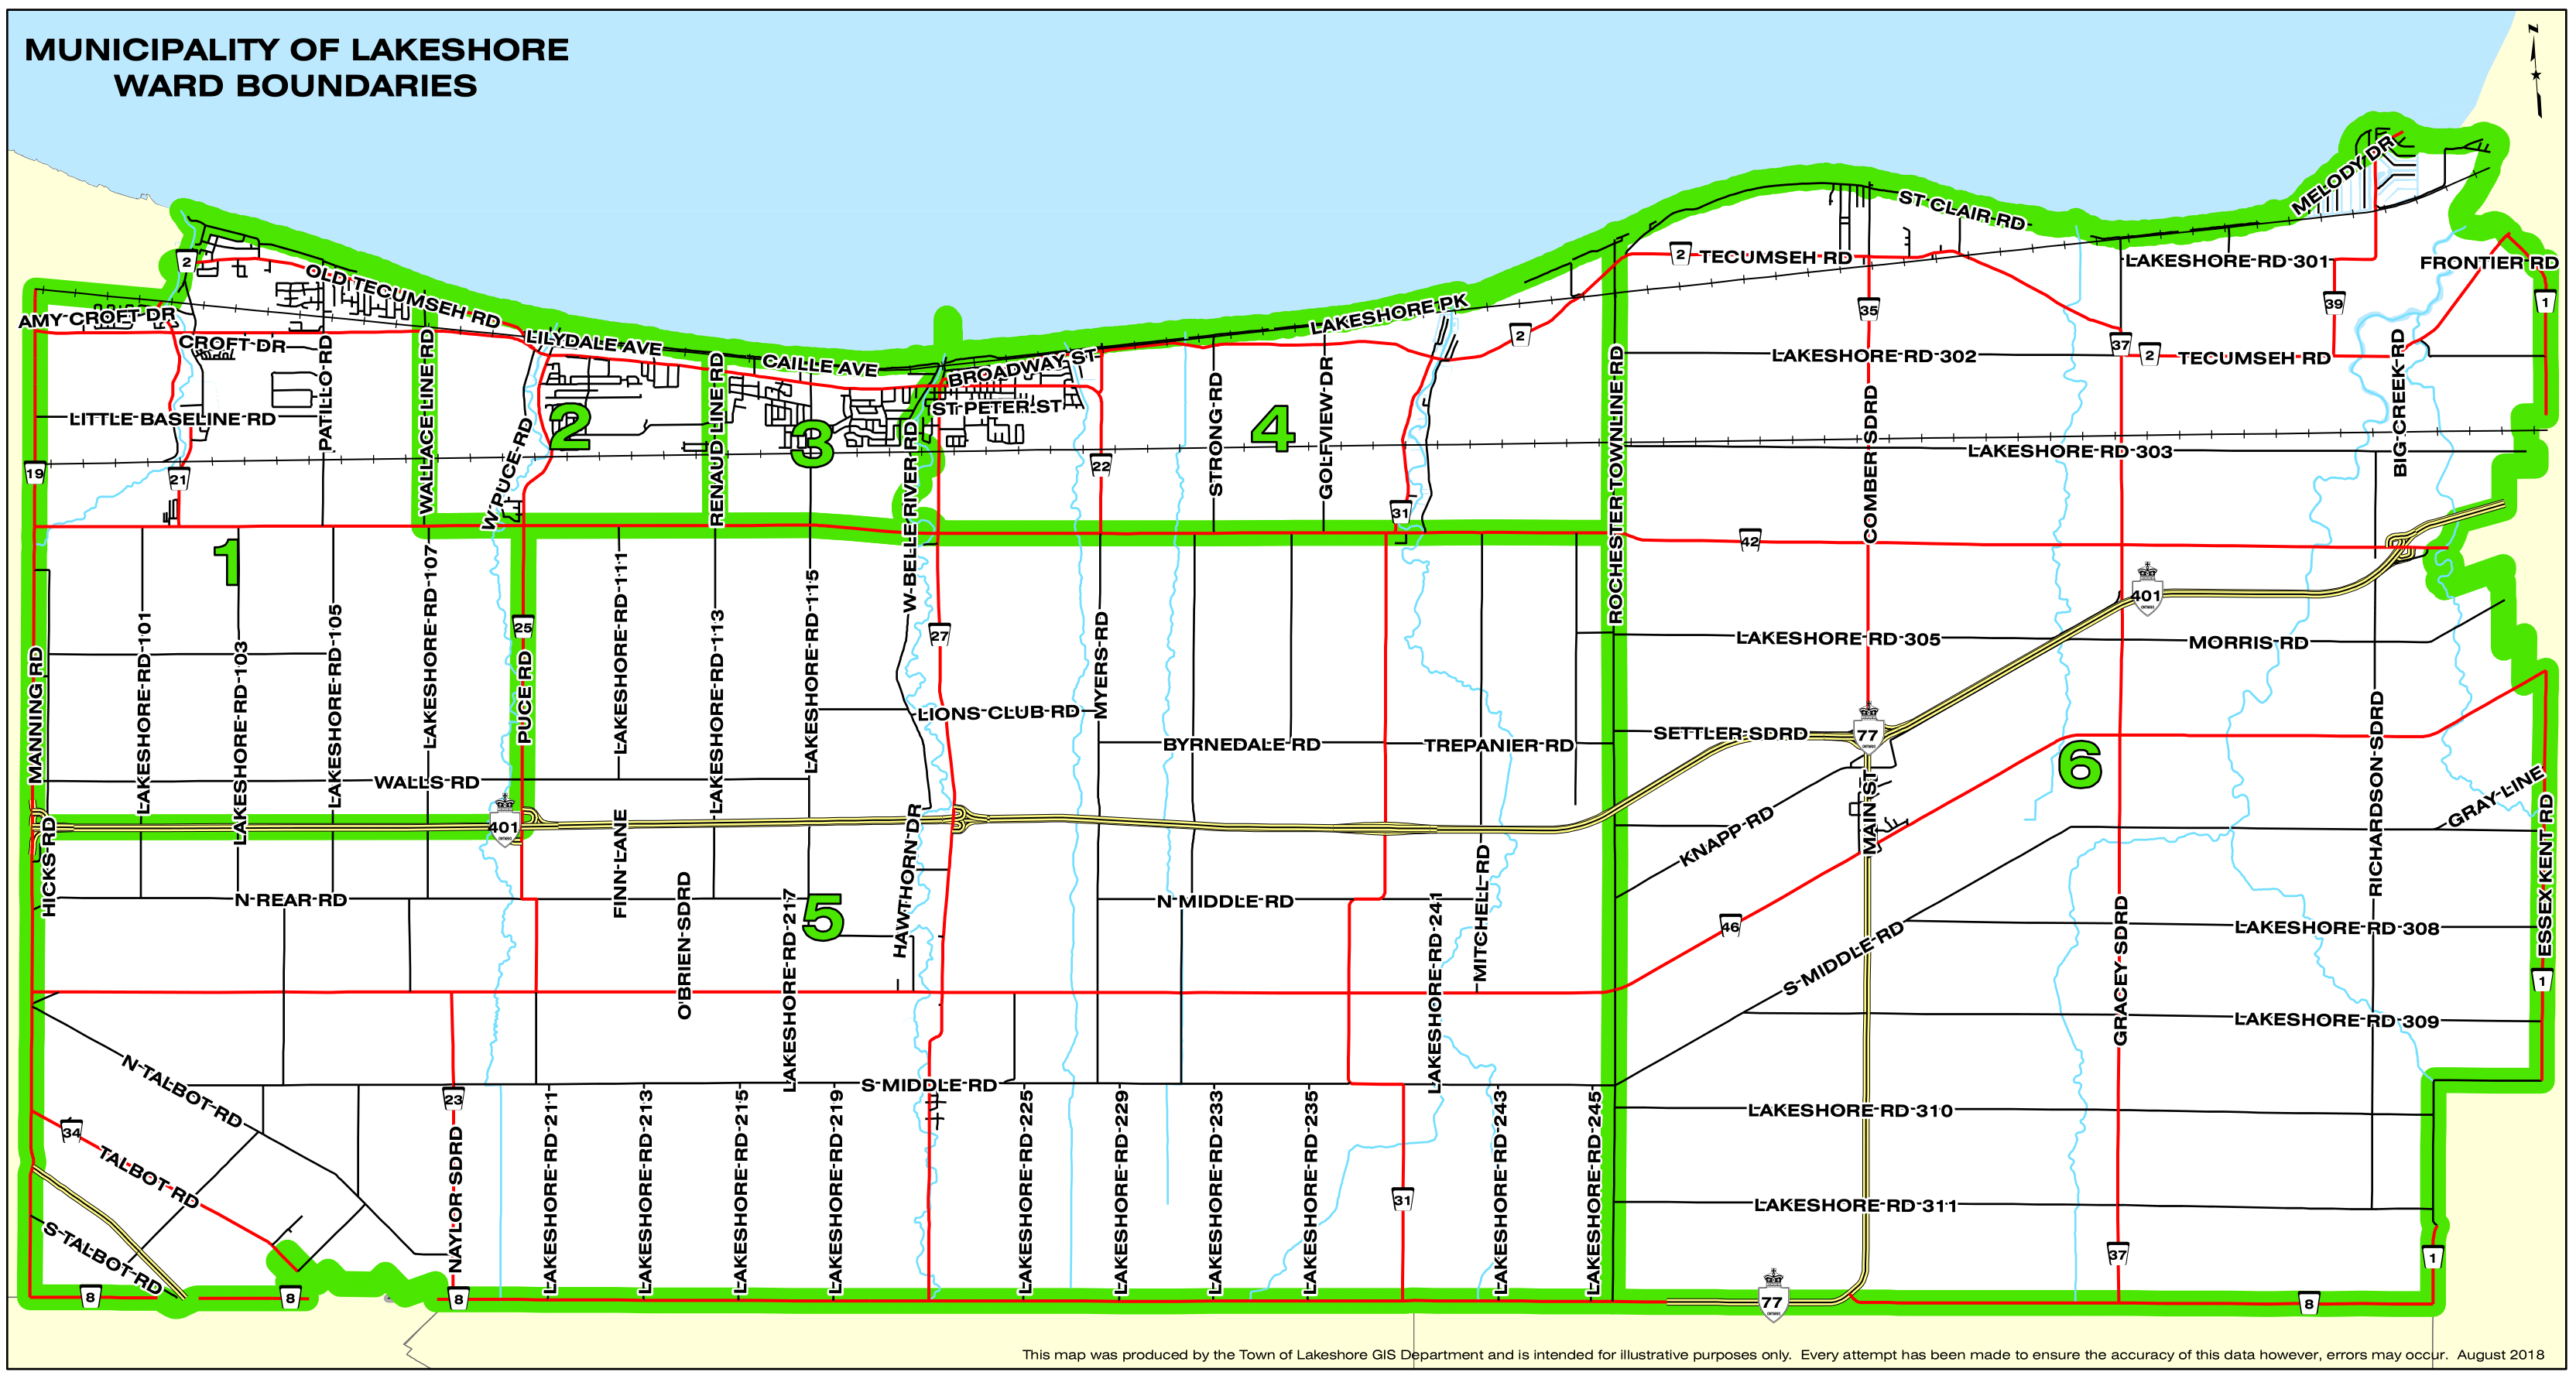 Image of Ward Map